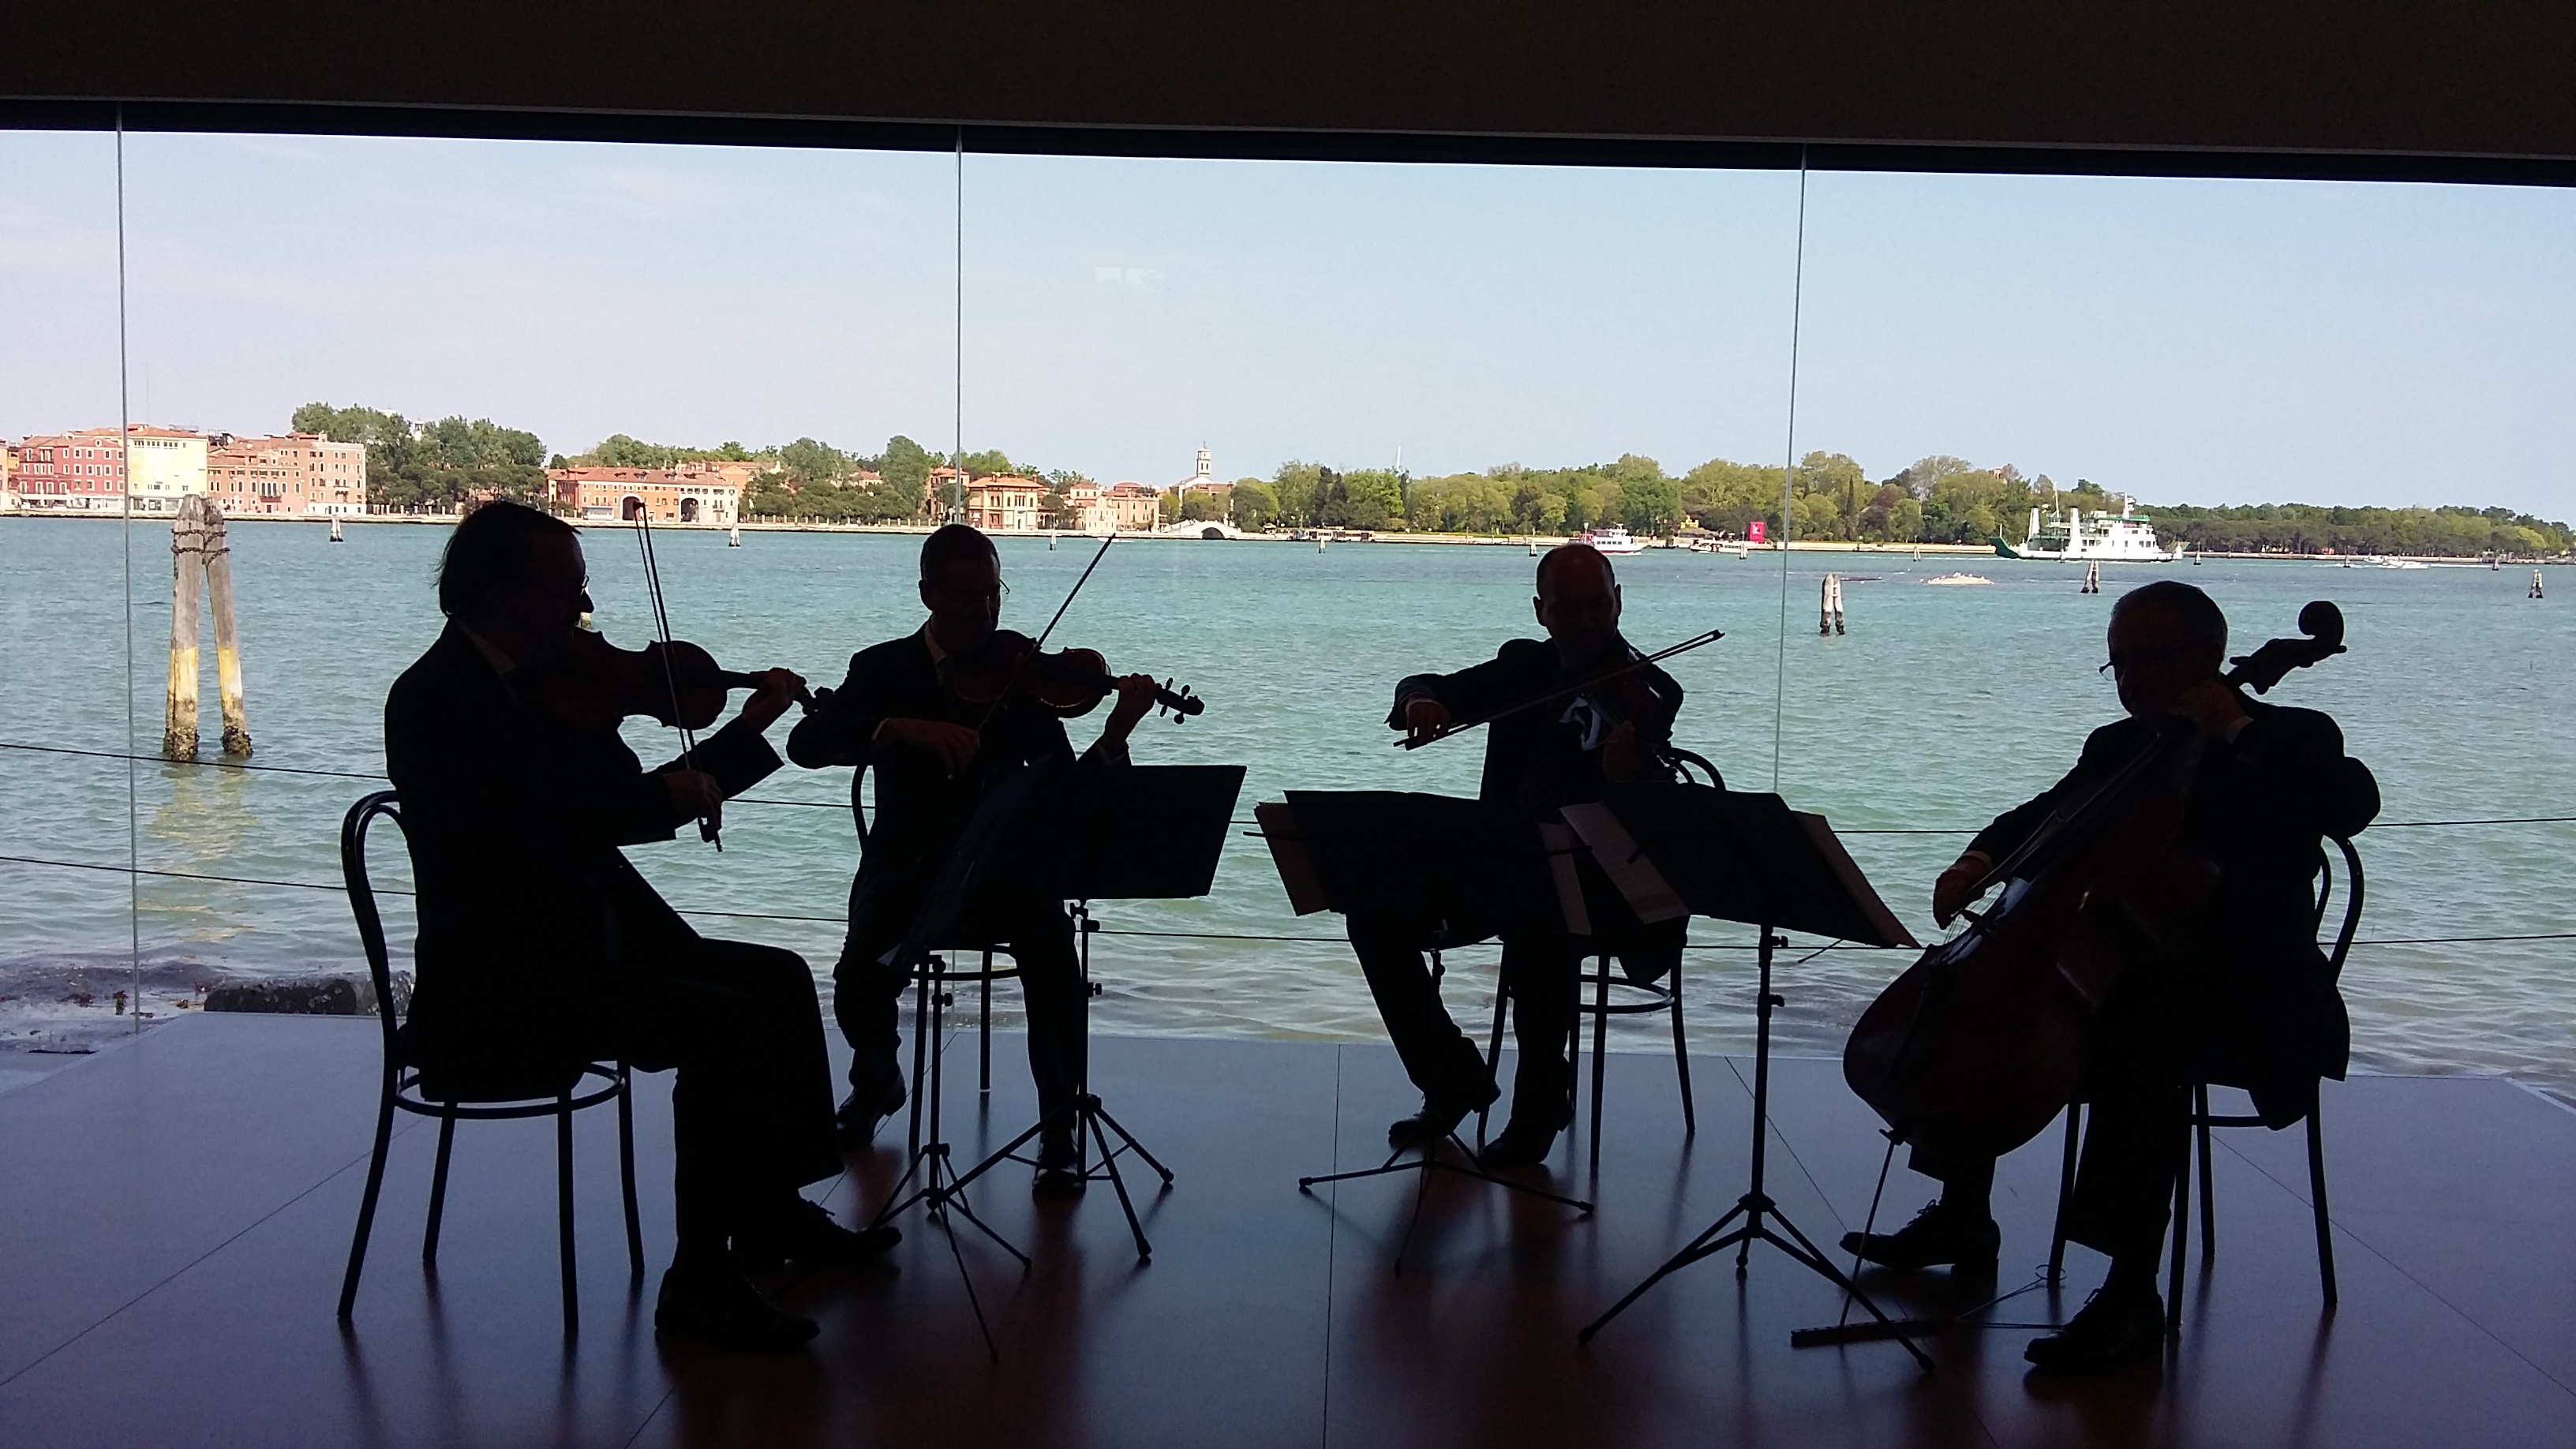 Quartetto di Venezia